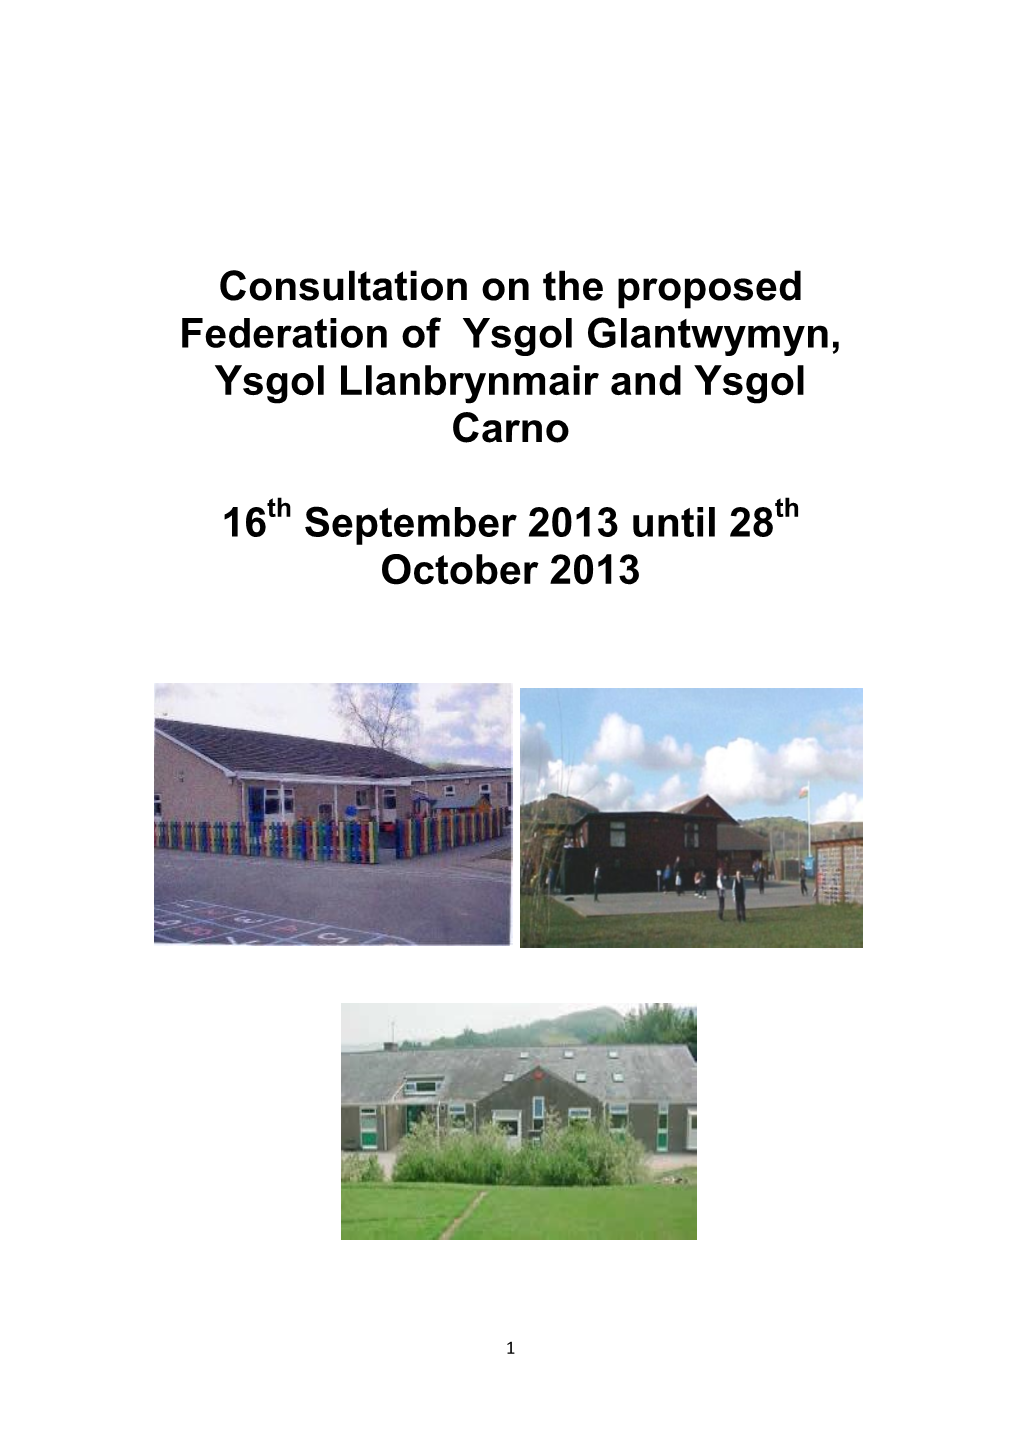 Consultation on the Proposed Federation of Ysgol Glantwymyn, Ysgol Llanbrynmair and Ysgol Carno